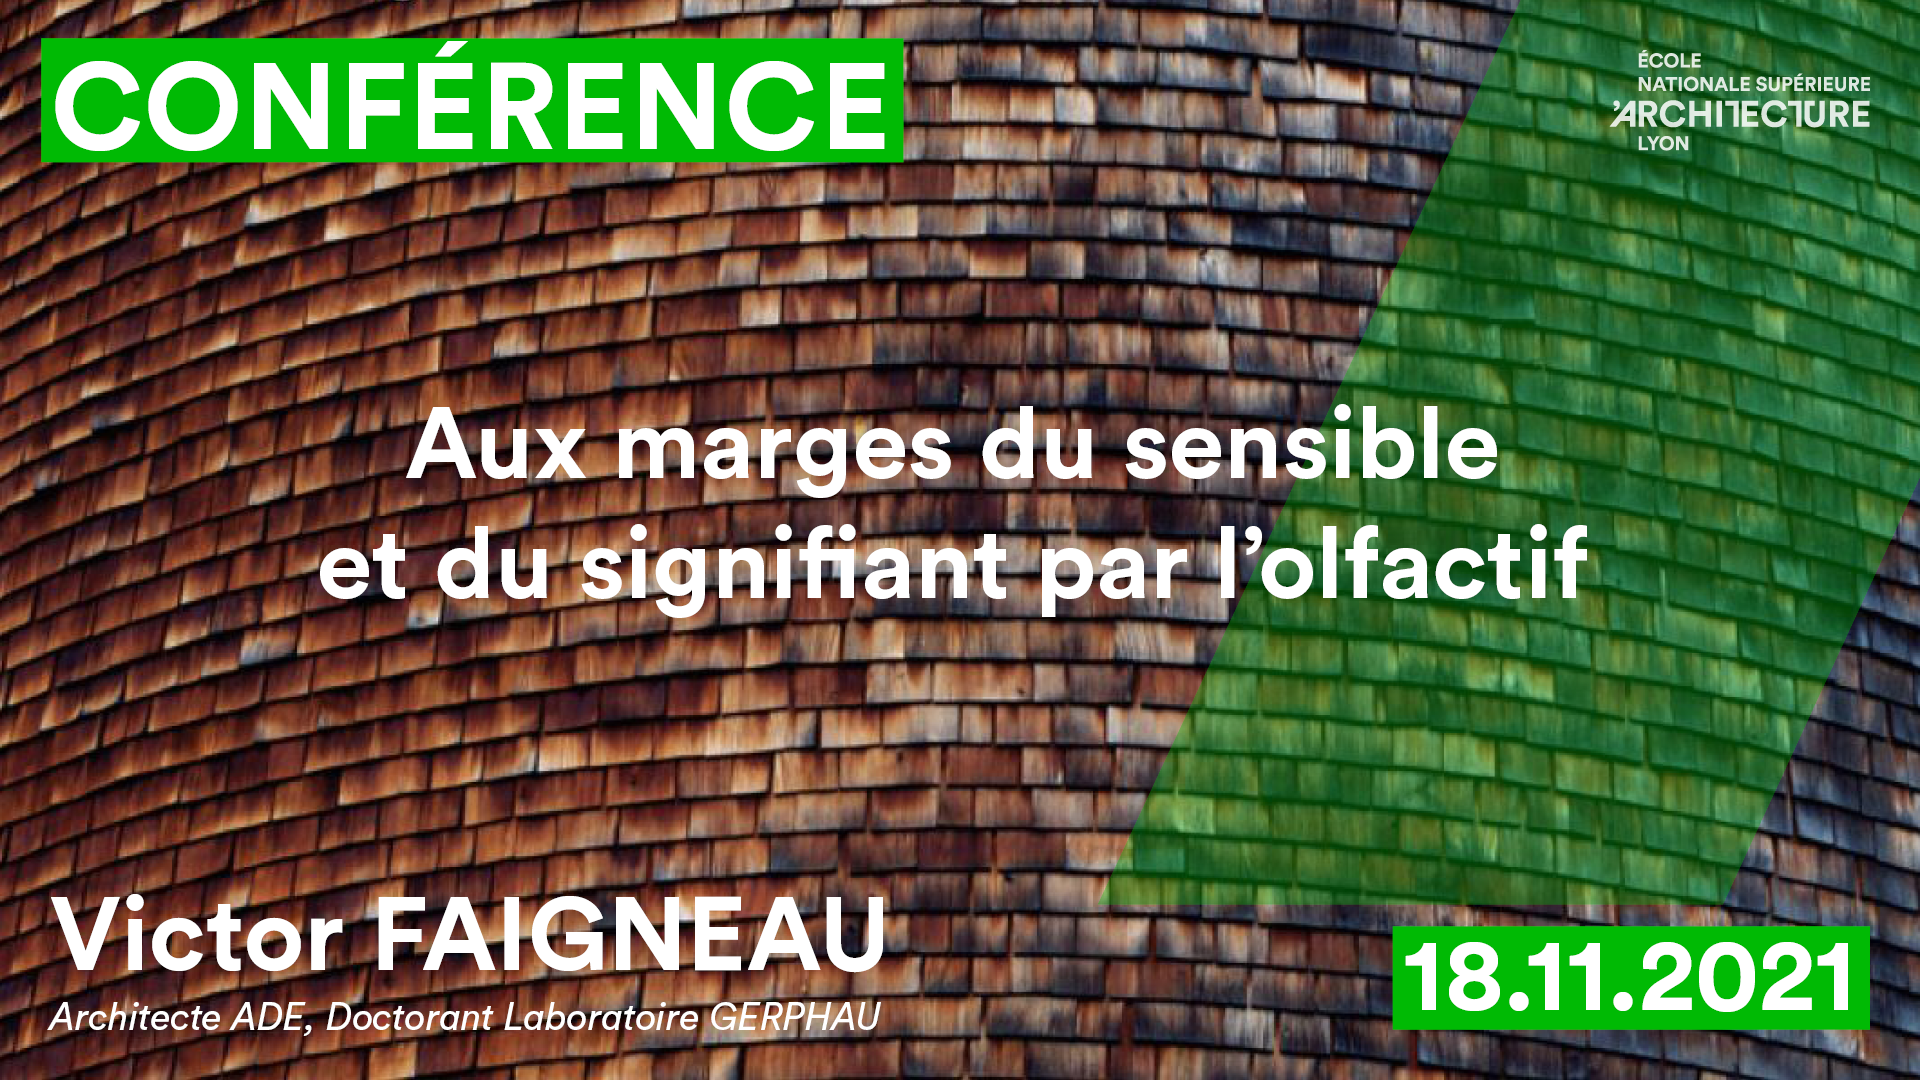 Conférence de Victor FRAIGNEAU
"Au marge du sensible et du signifiant par l'olfactif"